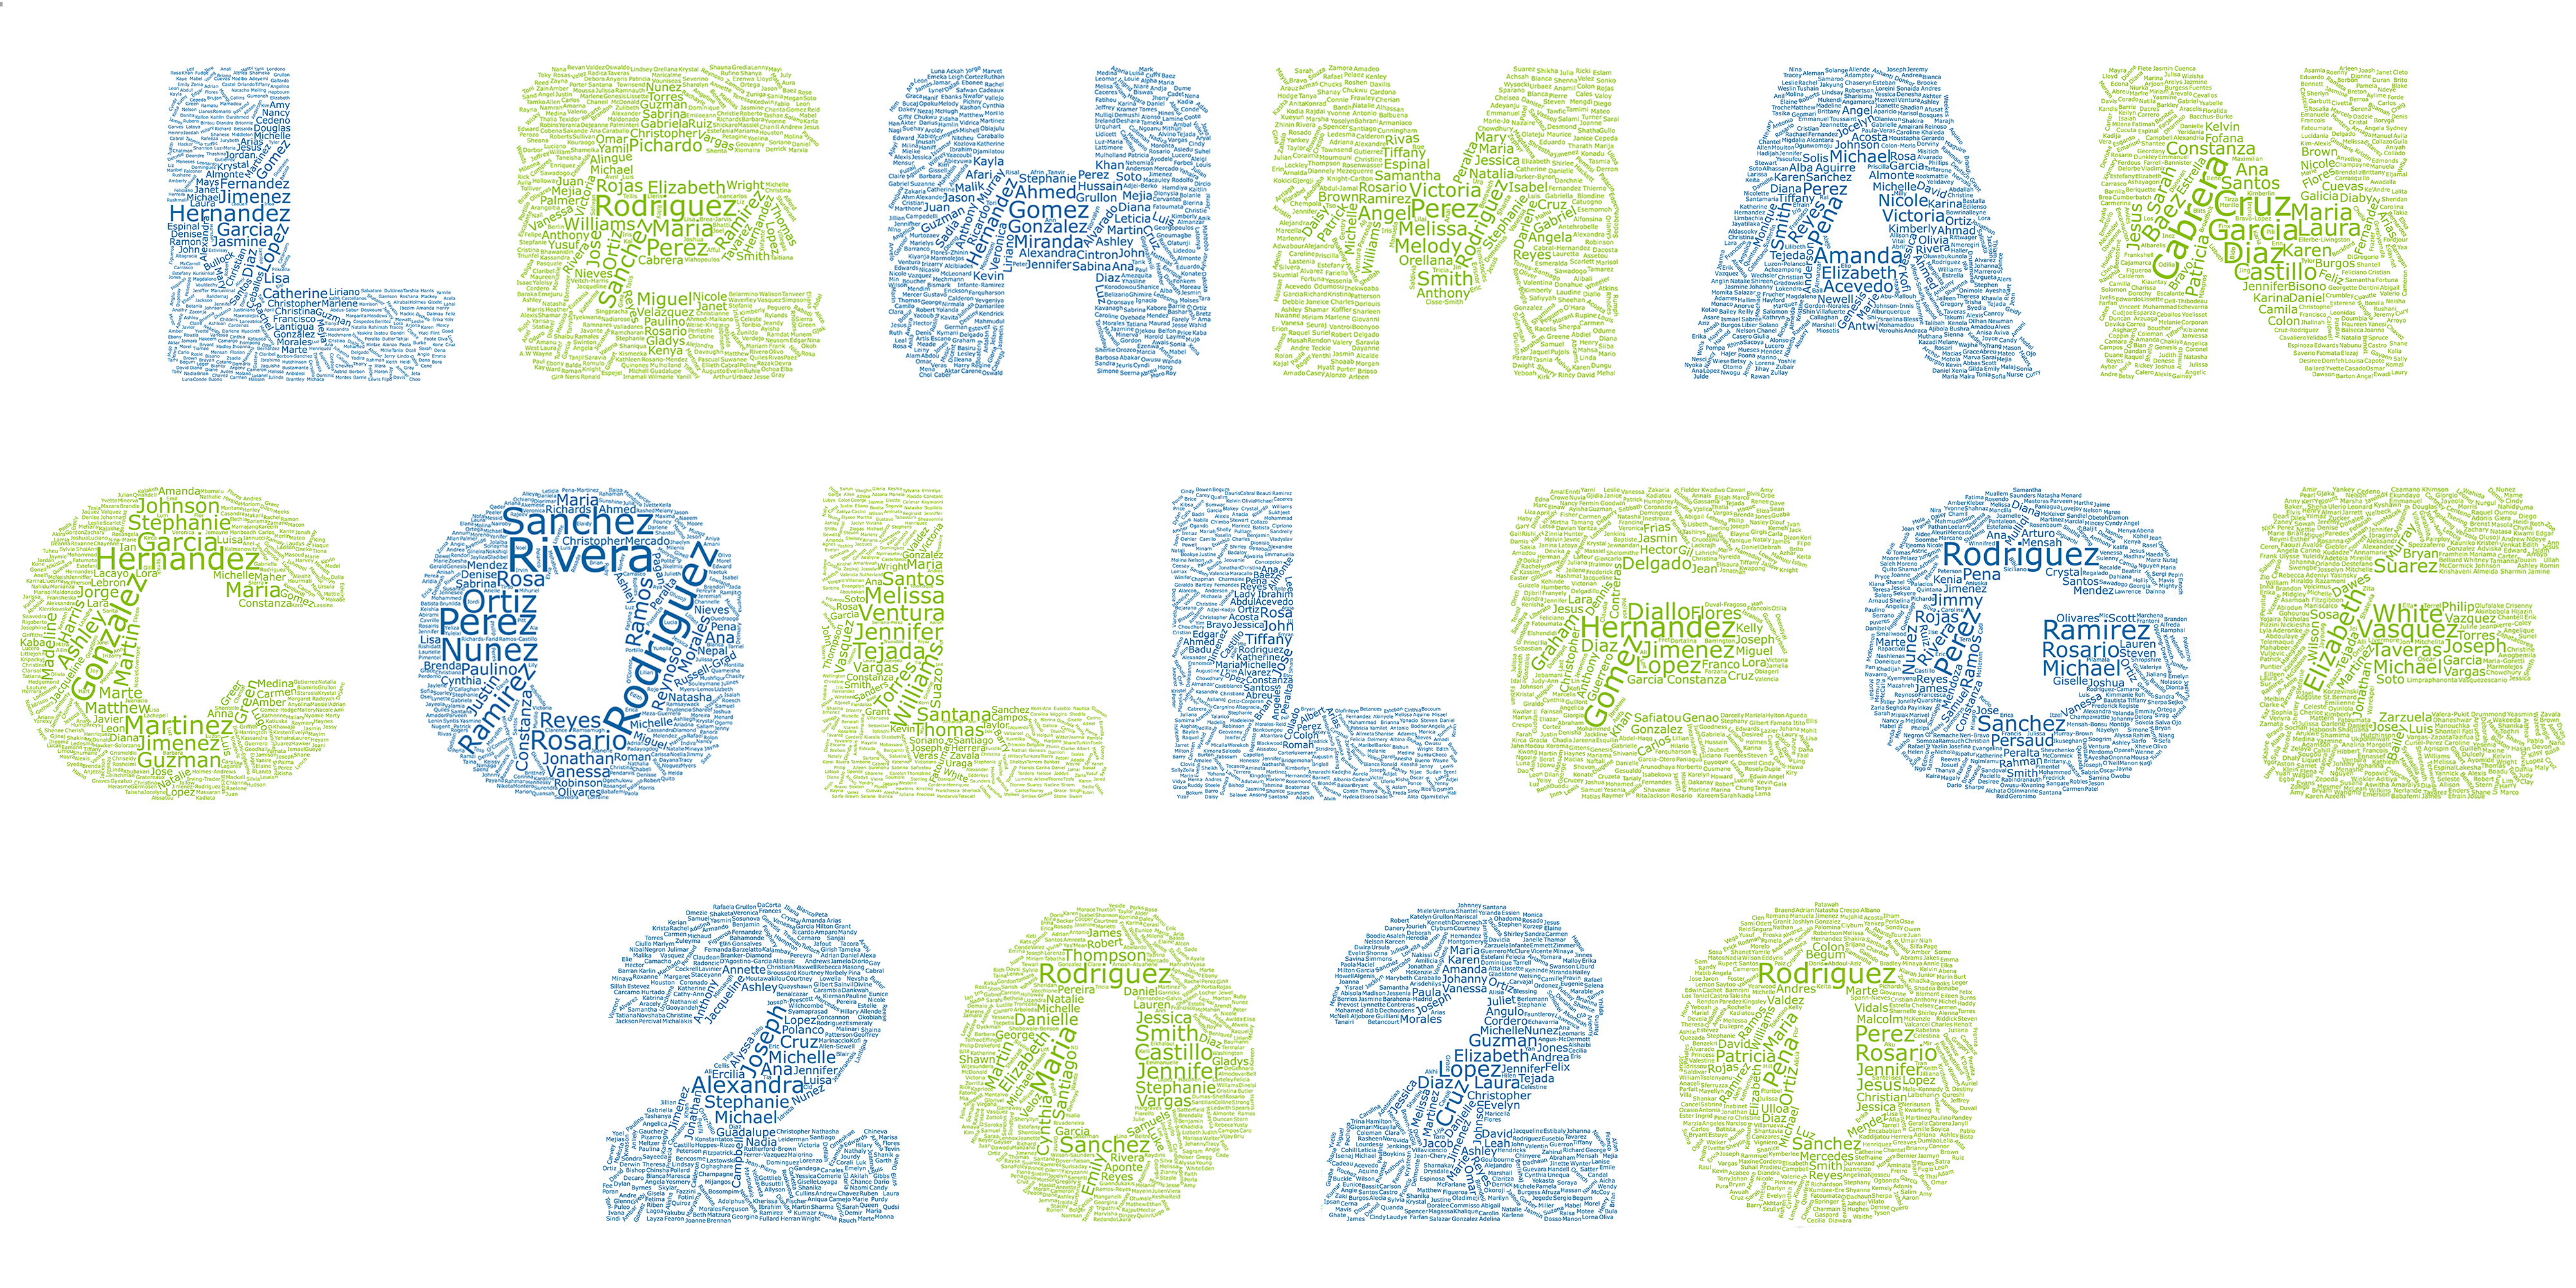 Lehman College Class of 2020